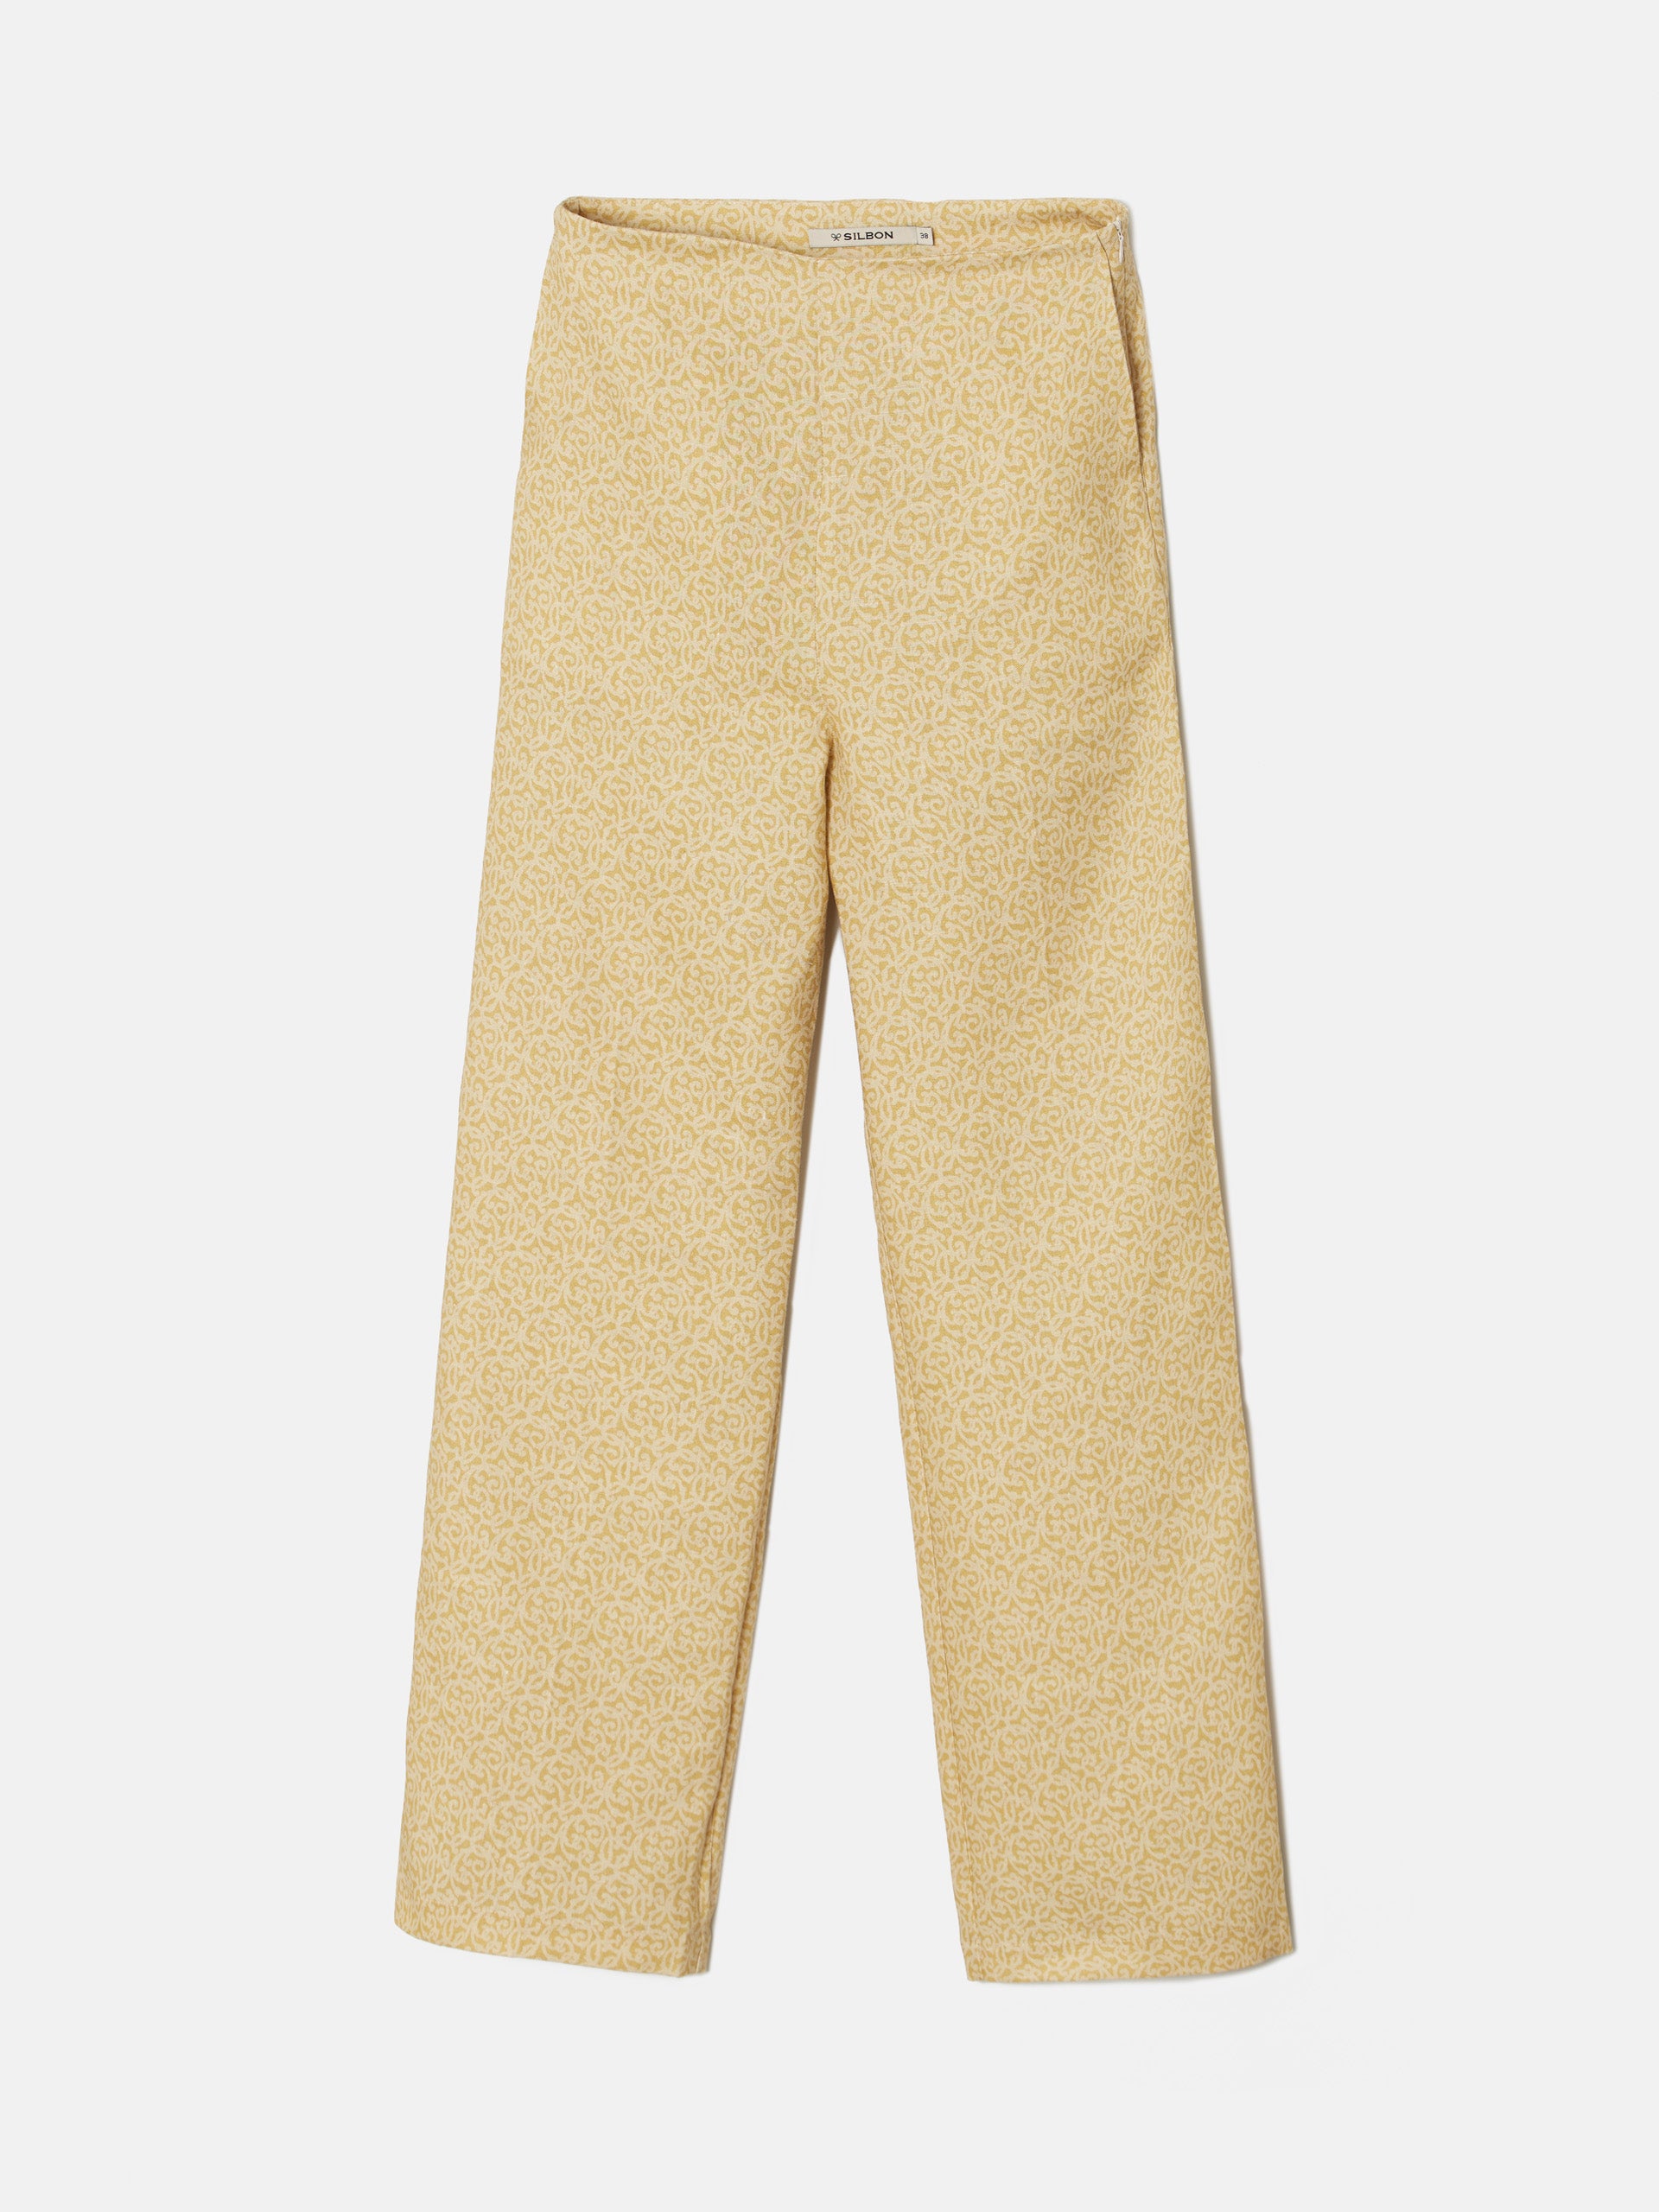 Pantalon lino estampado amarillo